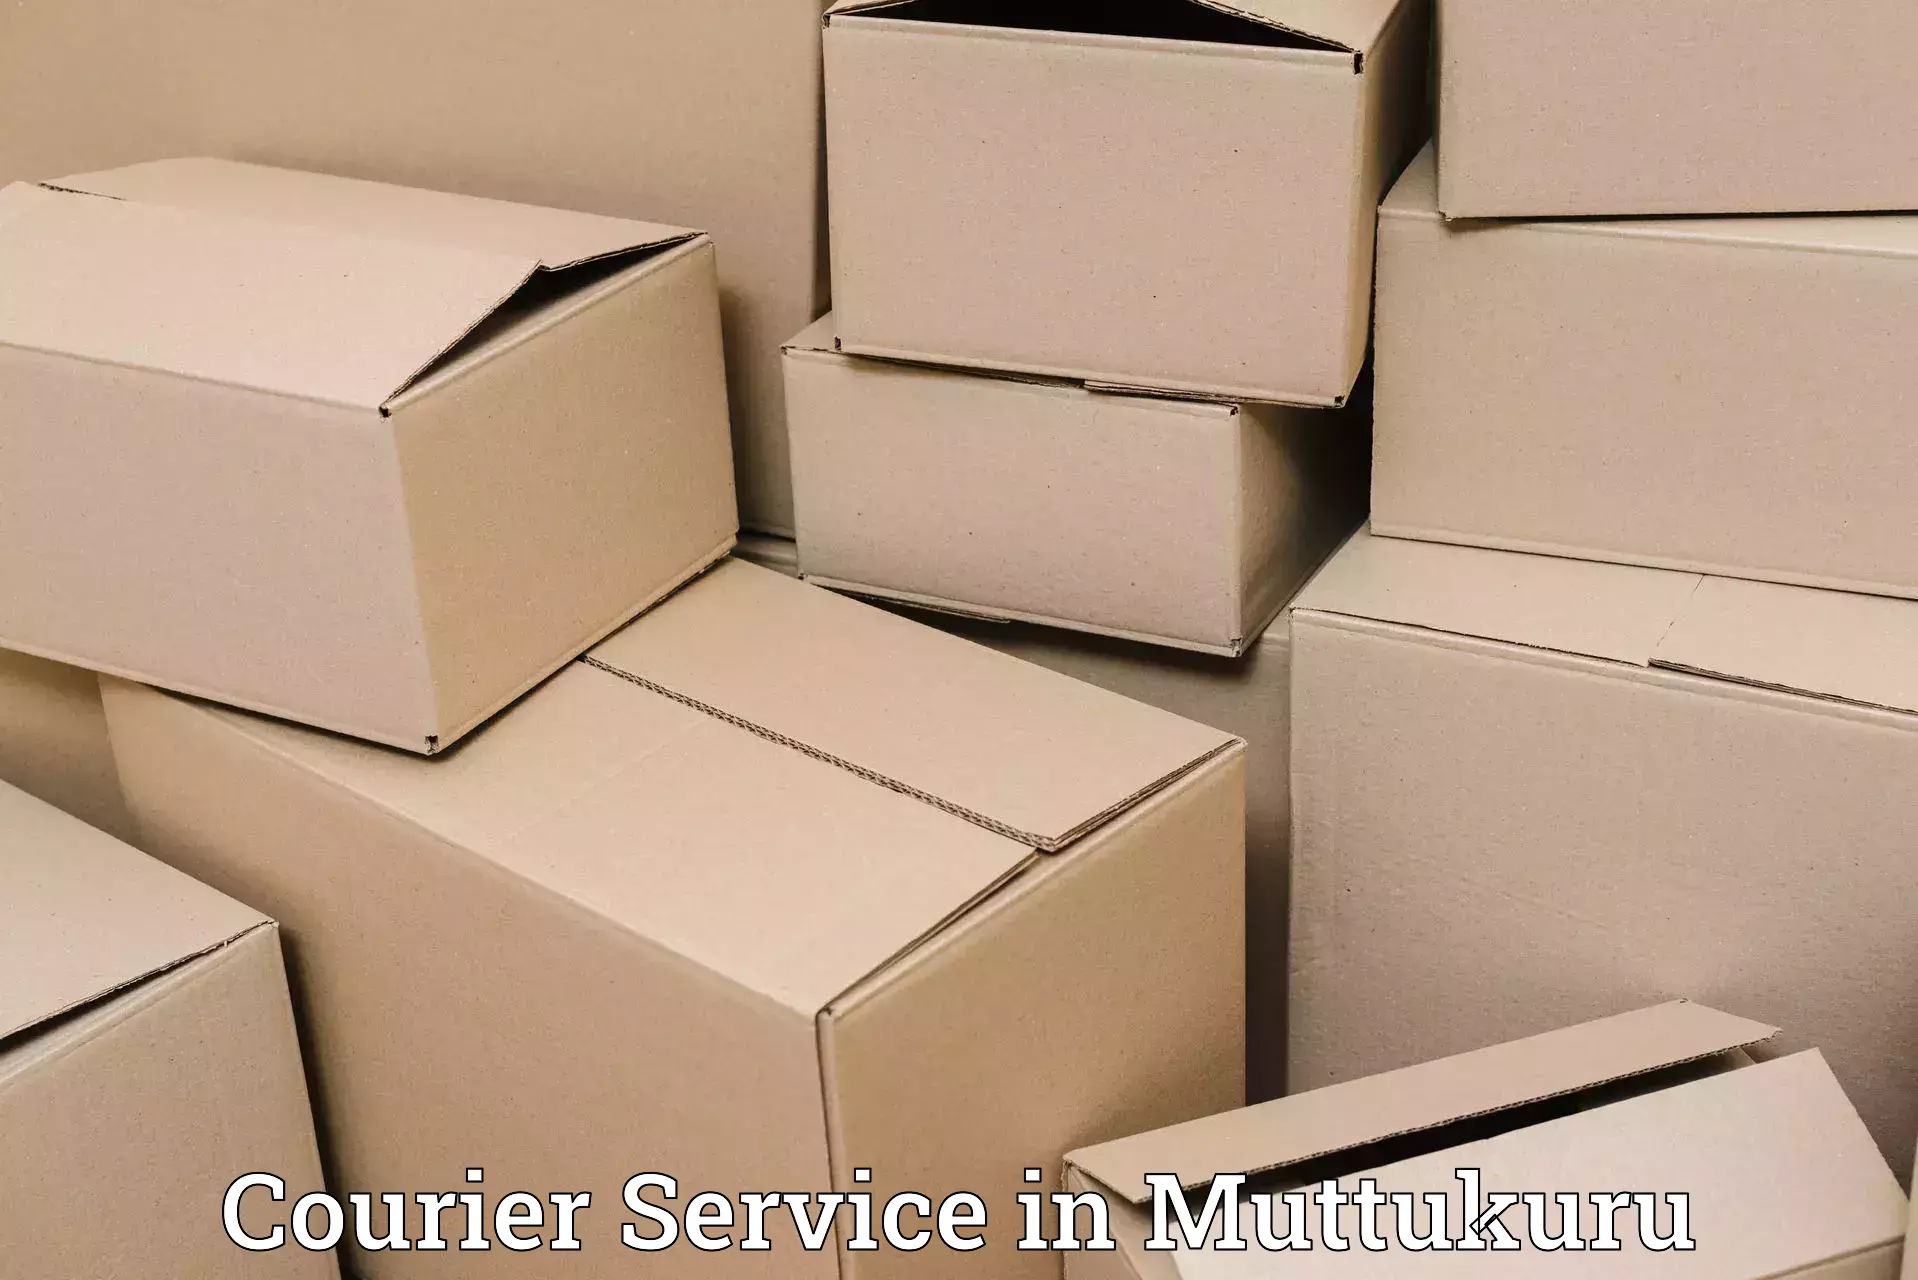 Comprehensive delivery network in Muttukuru